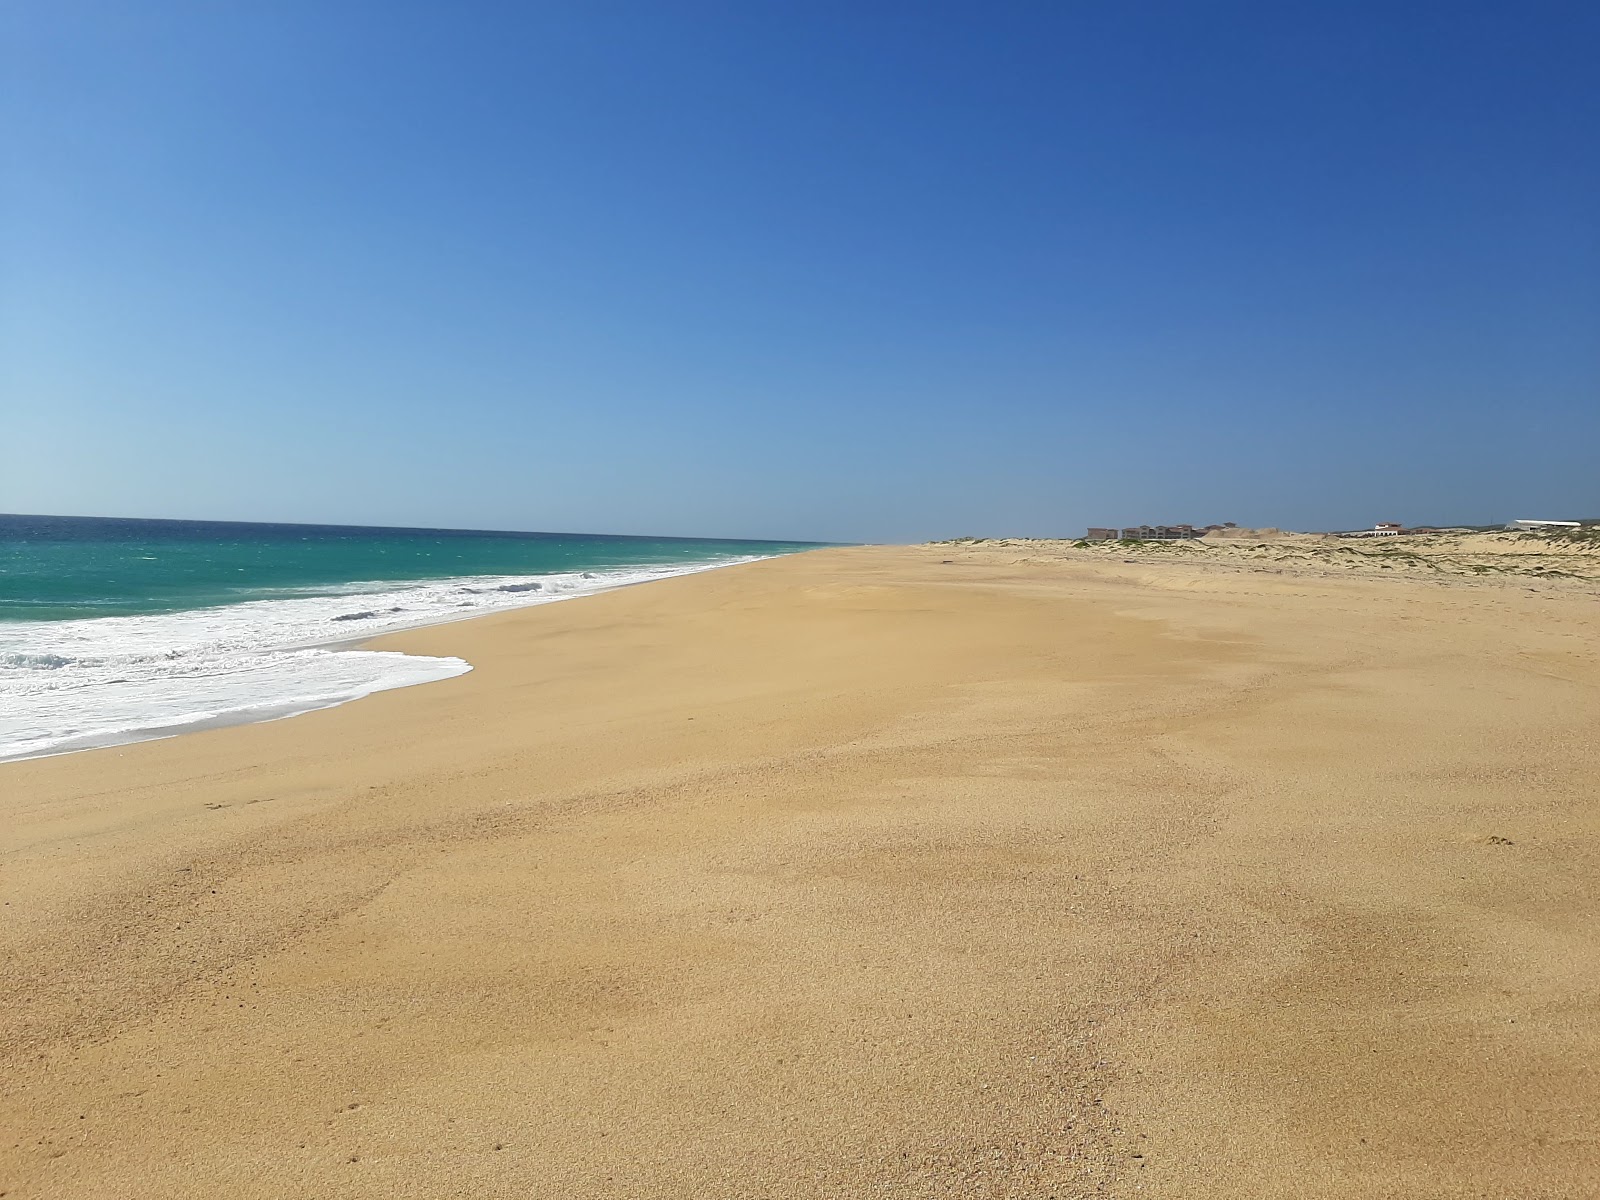 Playa El Suspiro'in fotoğrafı parlak ince kum yüzey ile